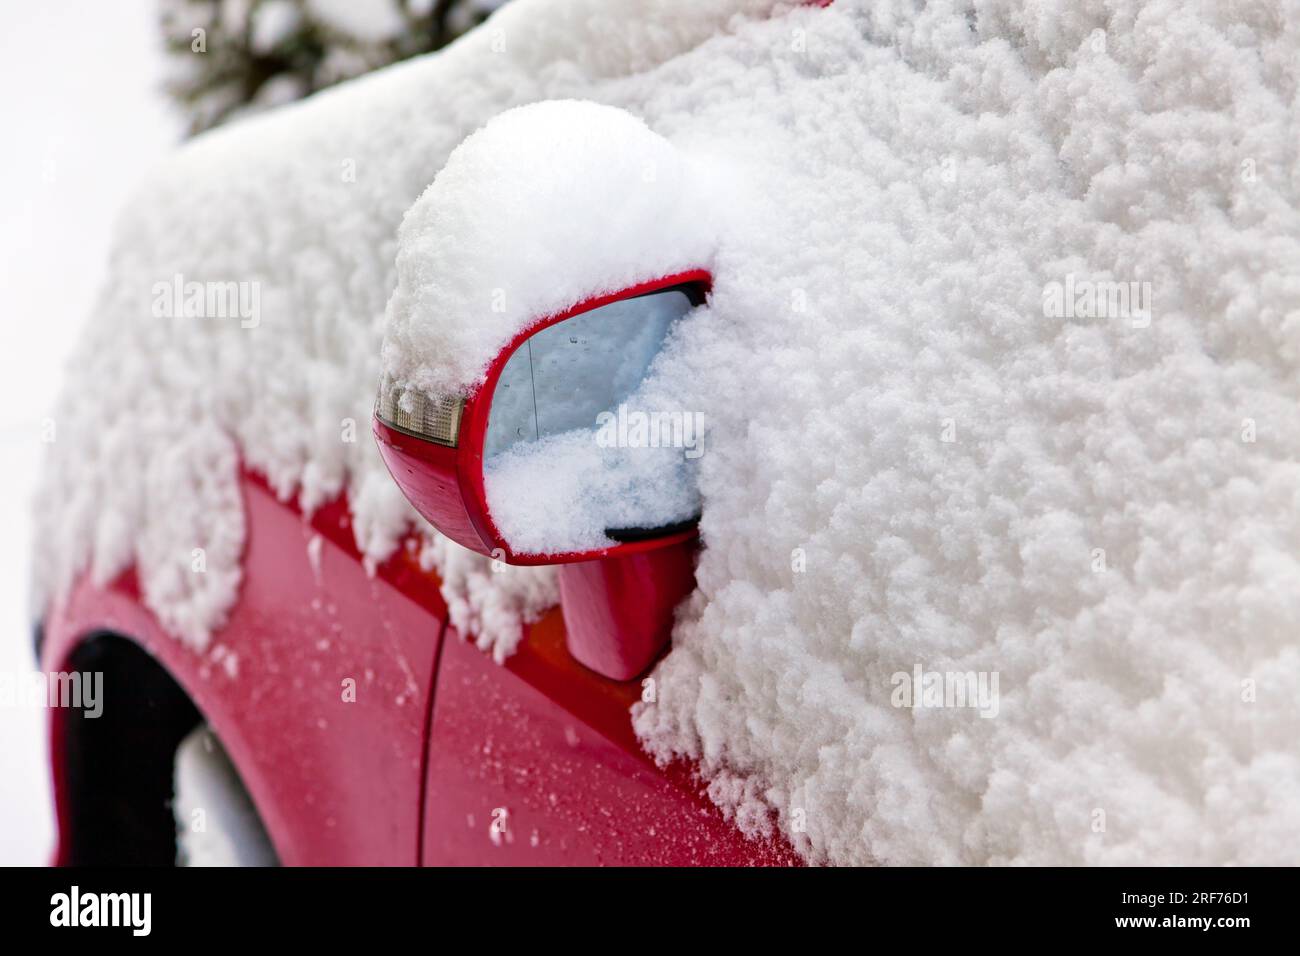 Ein eingeschneites rotes Auto im Winter, Schnee, Rad, Spiegel Stock Photo -  Alamy